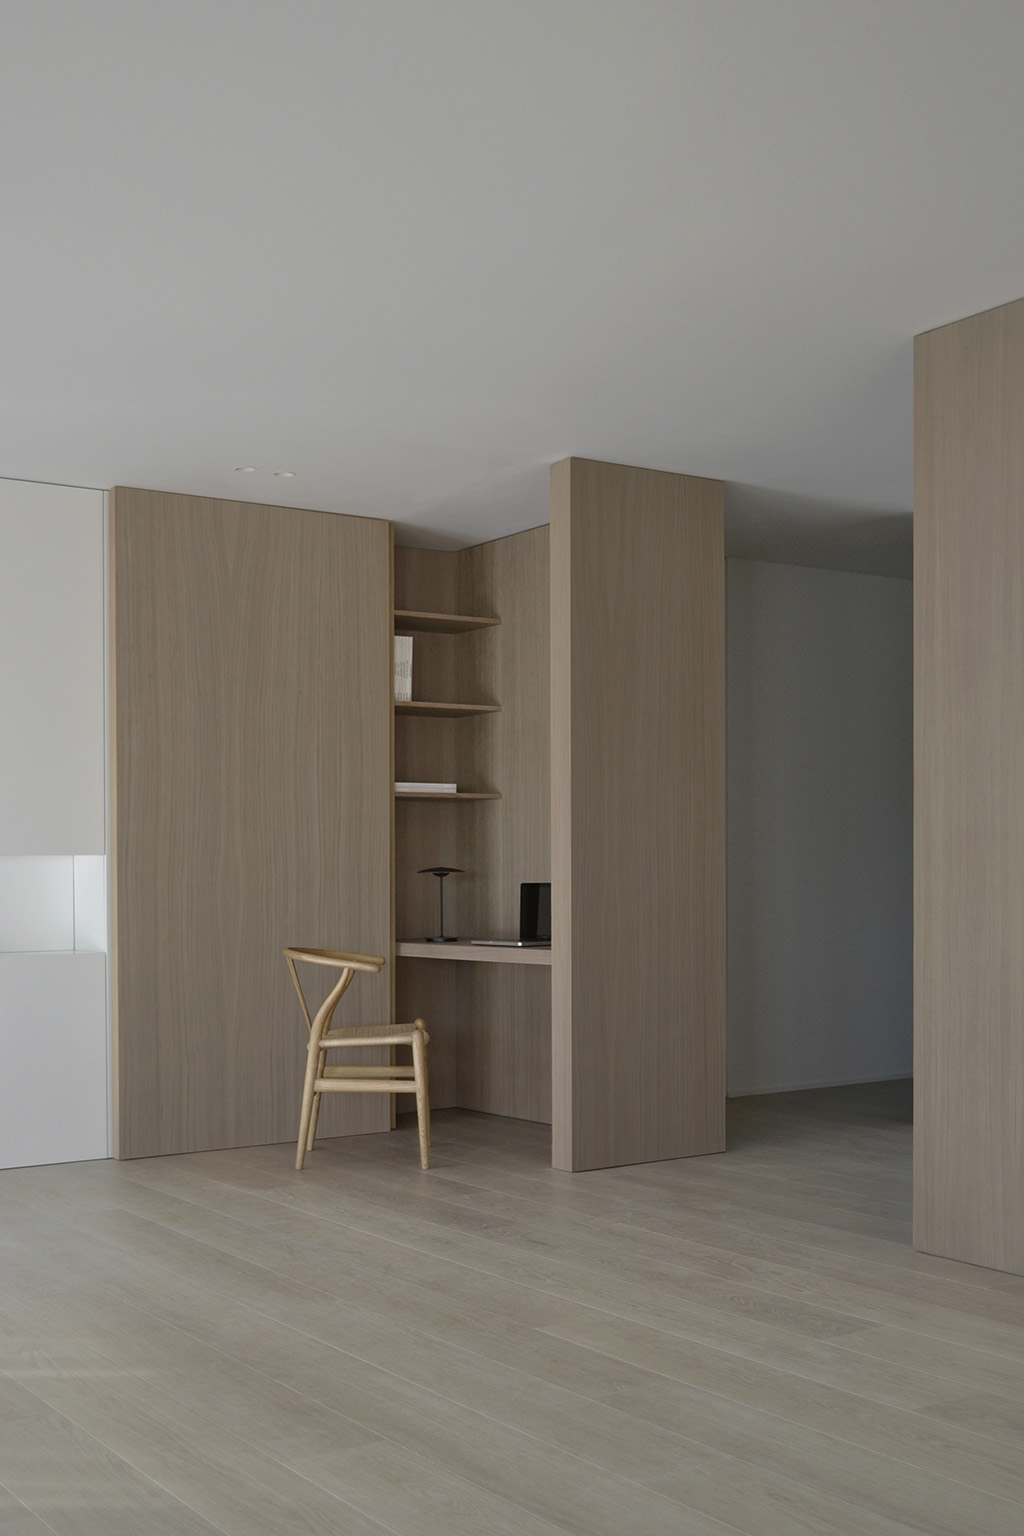 极简公寓设计案例,公寓设计,极简主义,国外极简风格公寓设计,Deza Setien,马德里,原木色+白色,公寓设计方案,120㎡